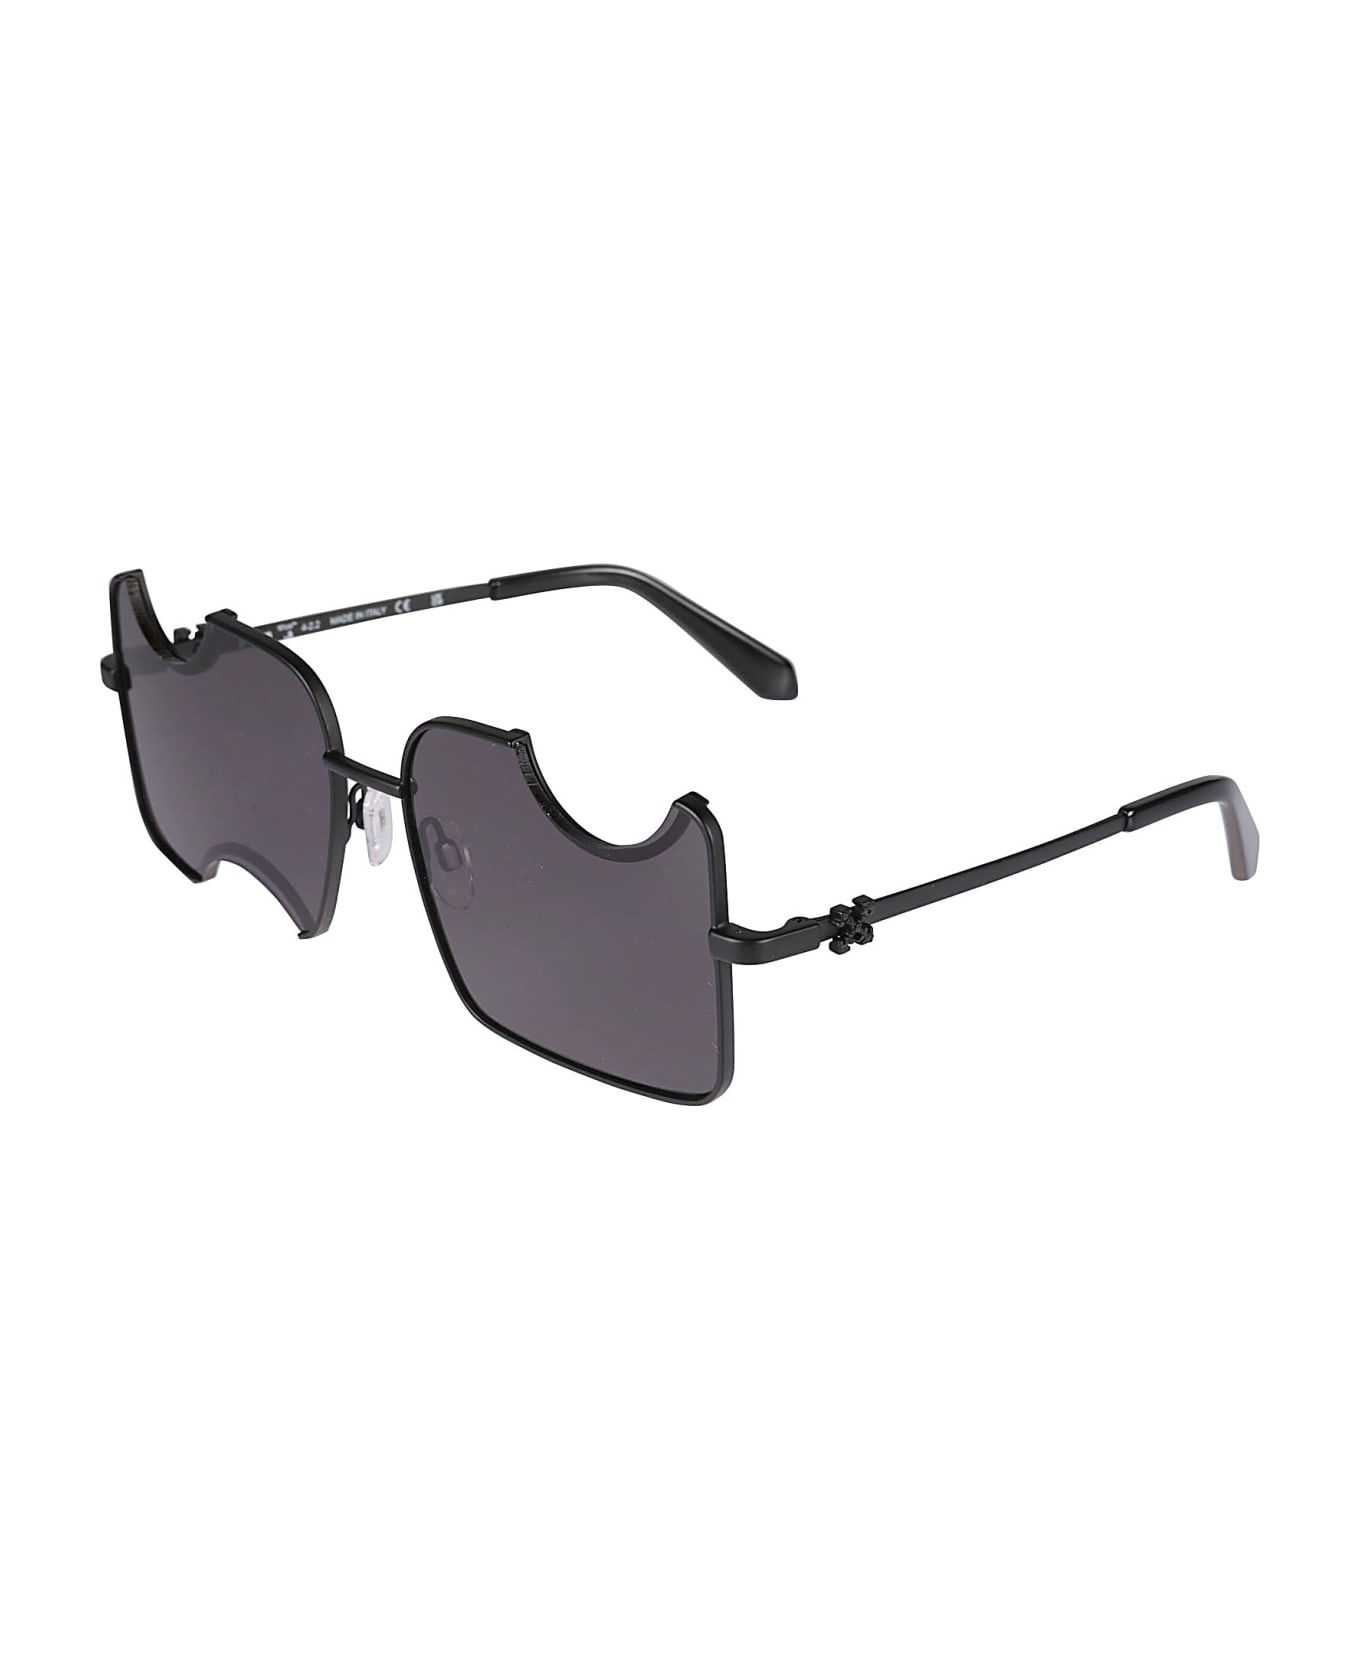 Off-White Salvador prada Sunglasses - Black